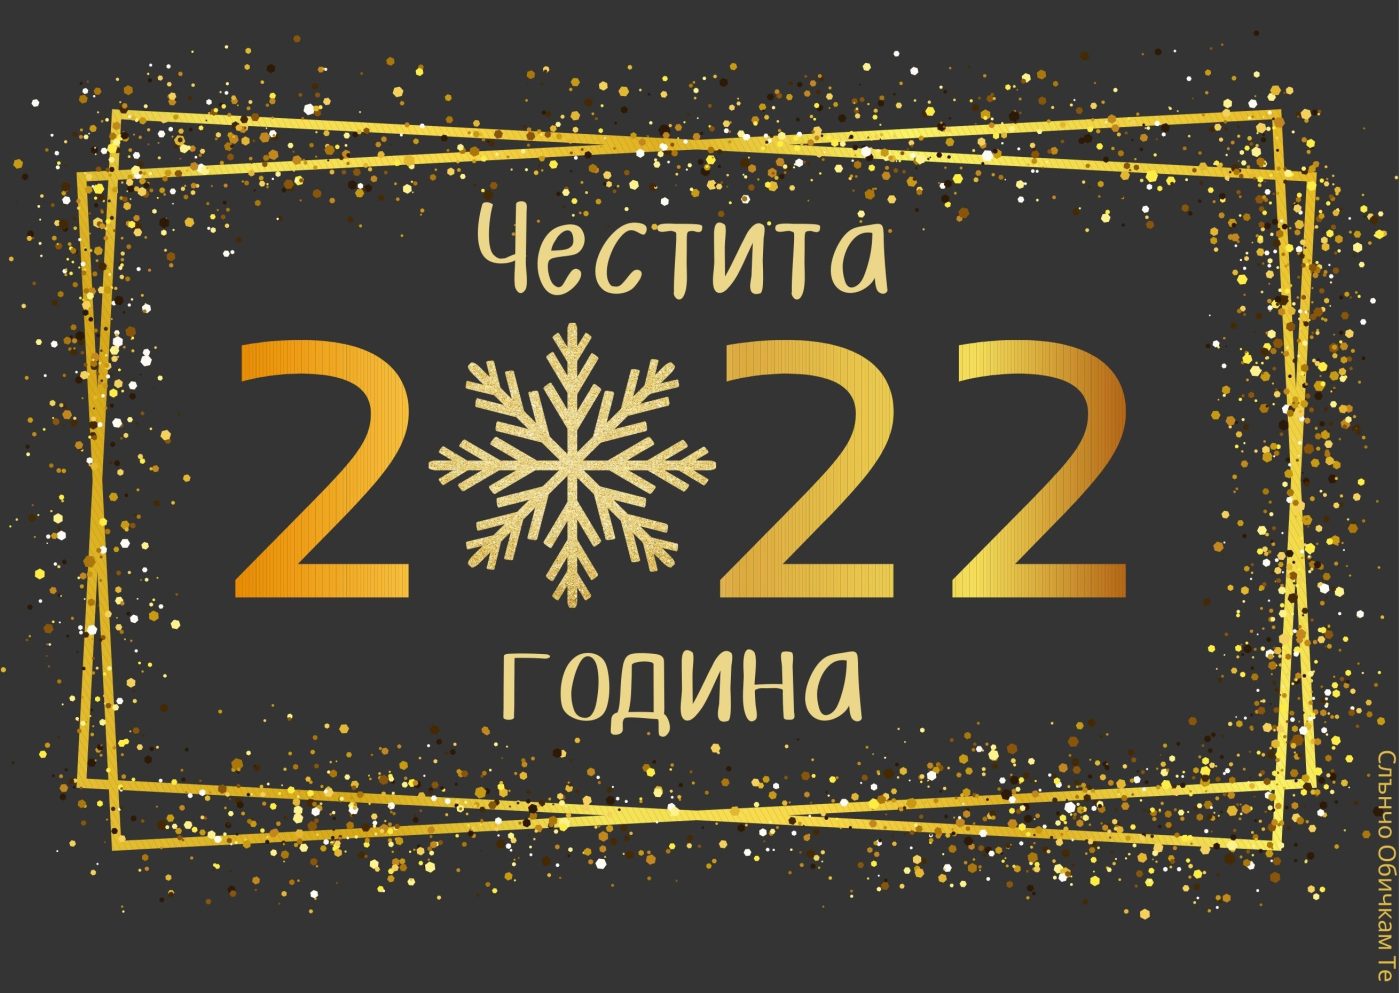 Честита 2022 година - Картички за Нова година, новогодишни пожелания, Щастлива нова година, златни надписи, 2022, слънчо обичкам те